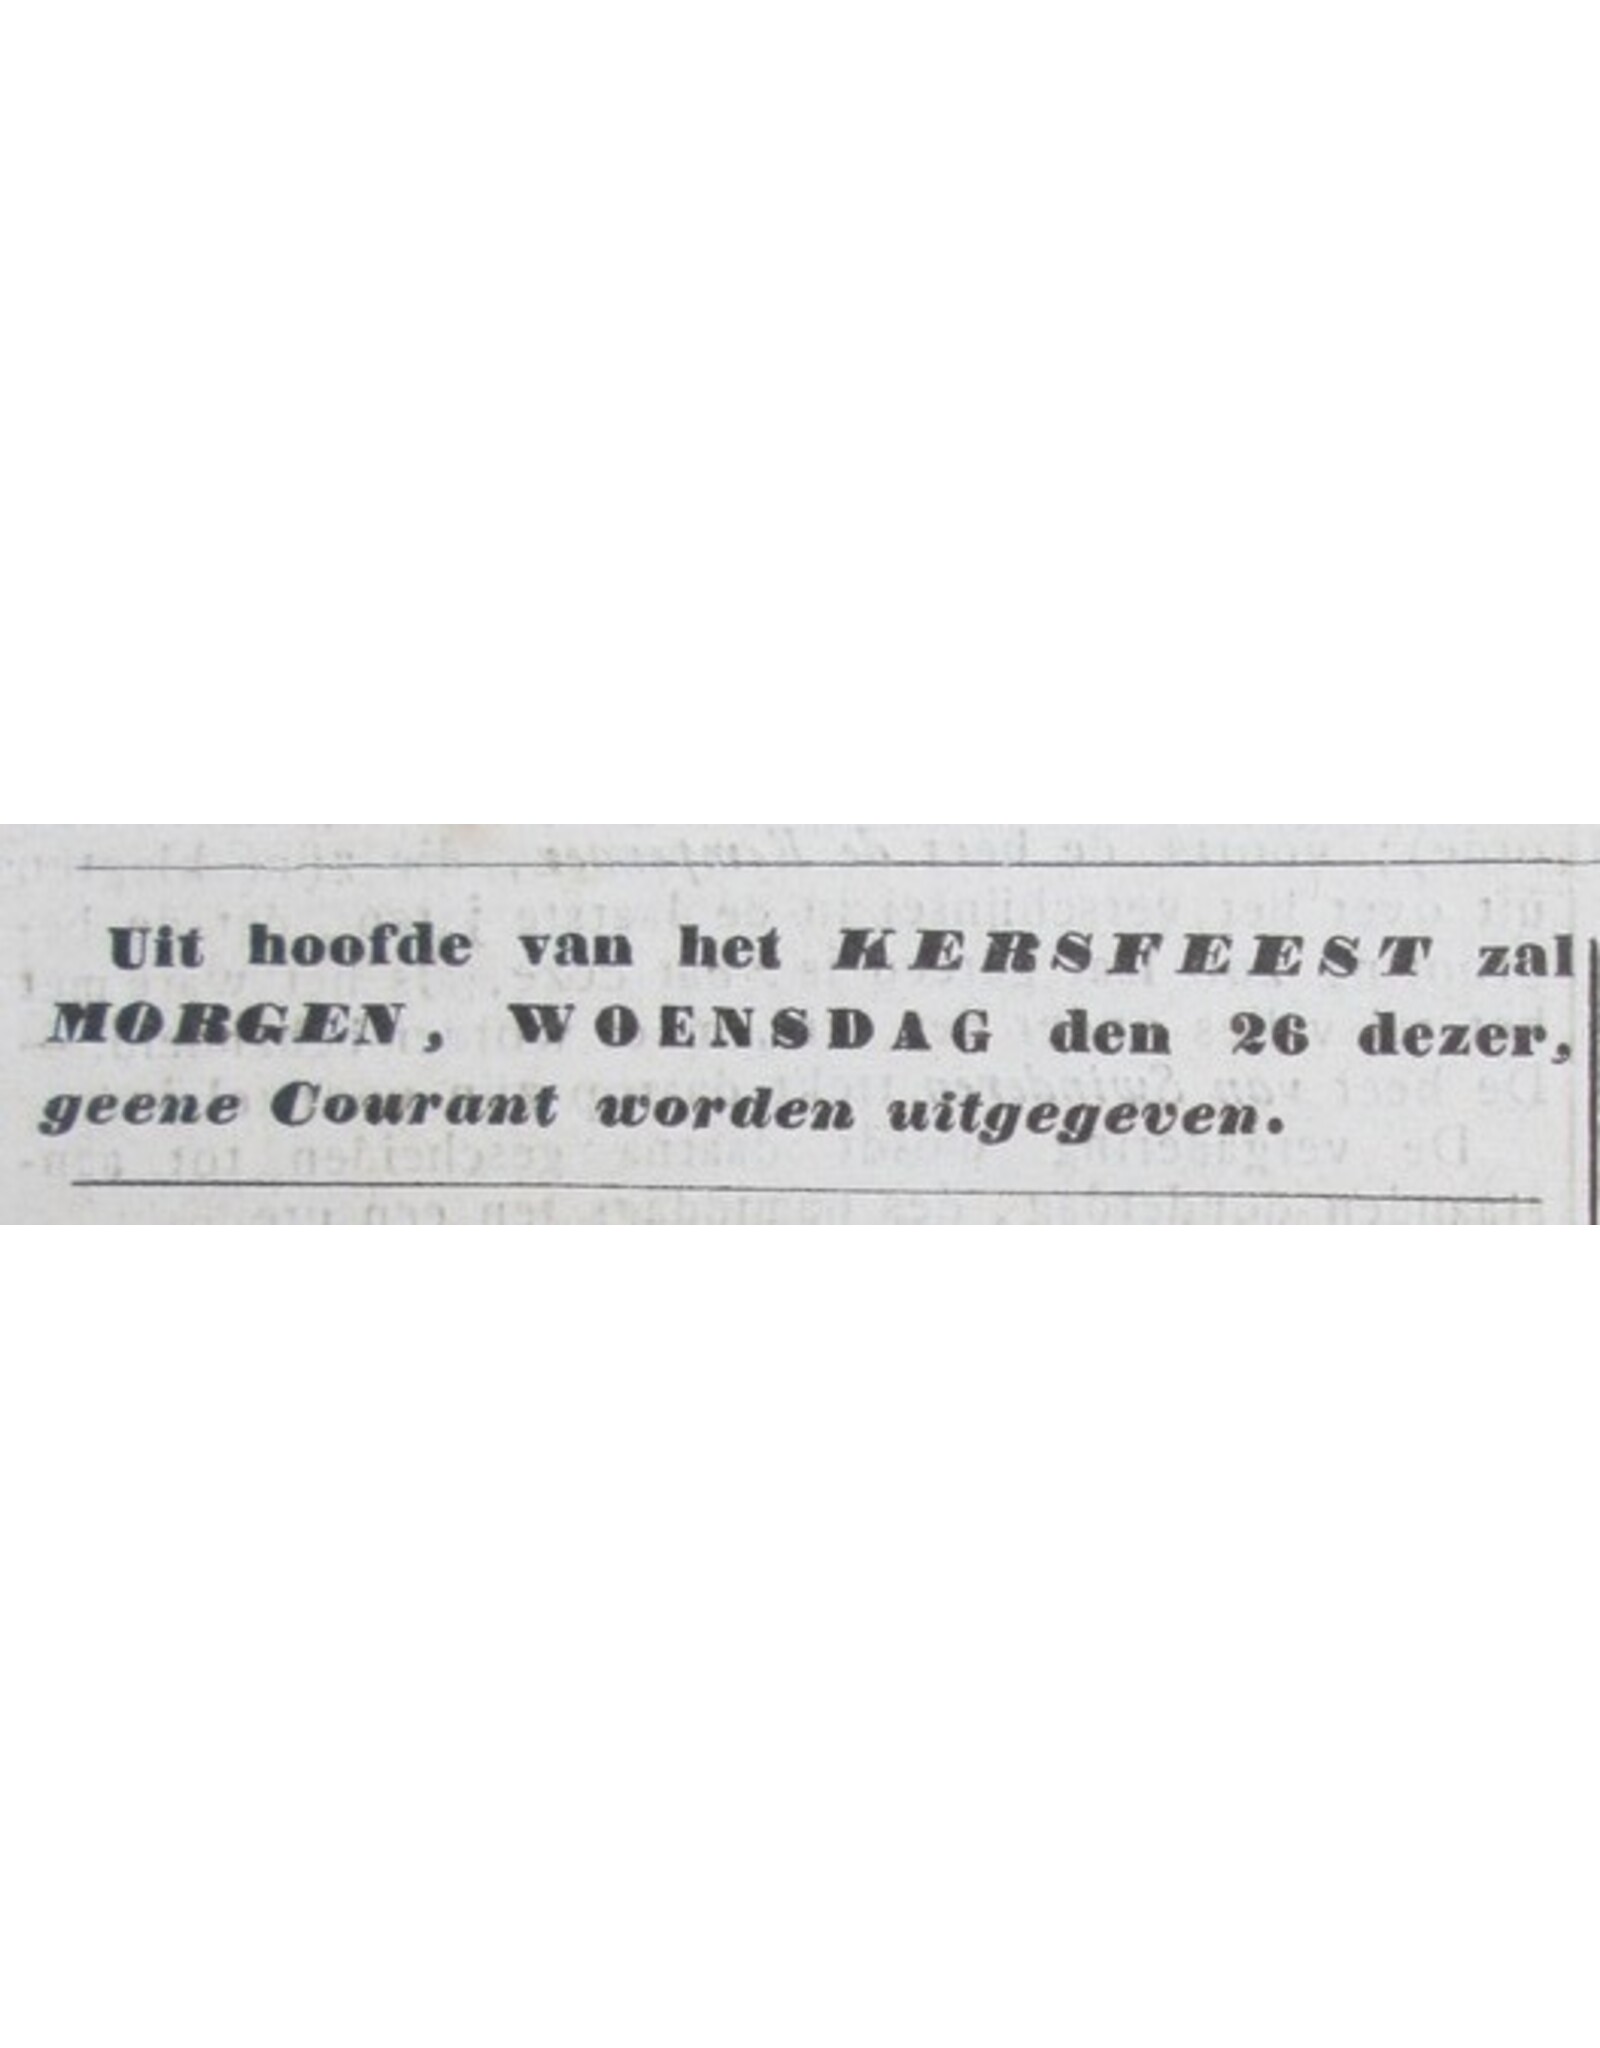 [Reinier & Benjamin Arrenberg] - Rotterdamsche Courant No. 285 t/m 309 [Slavernij]